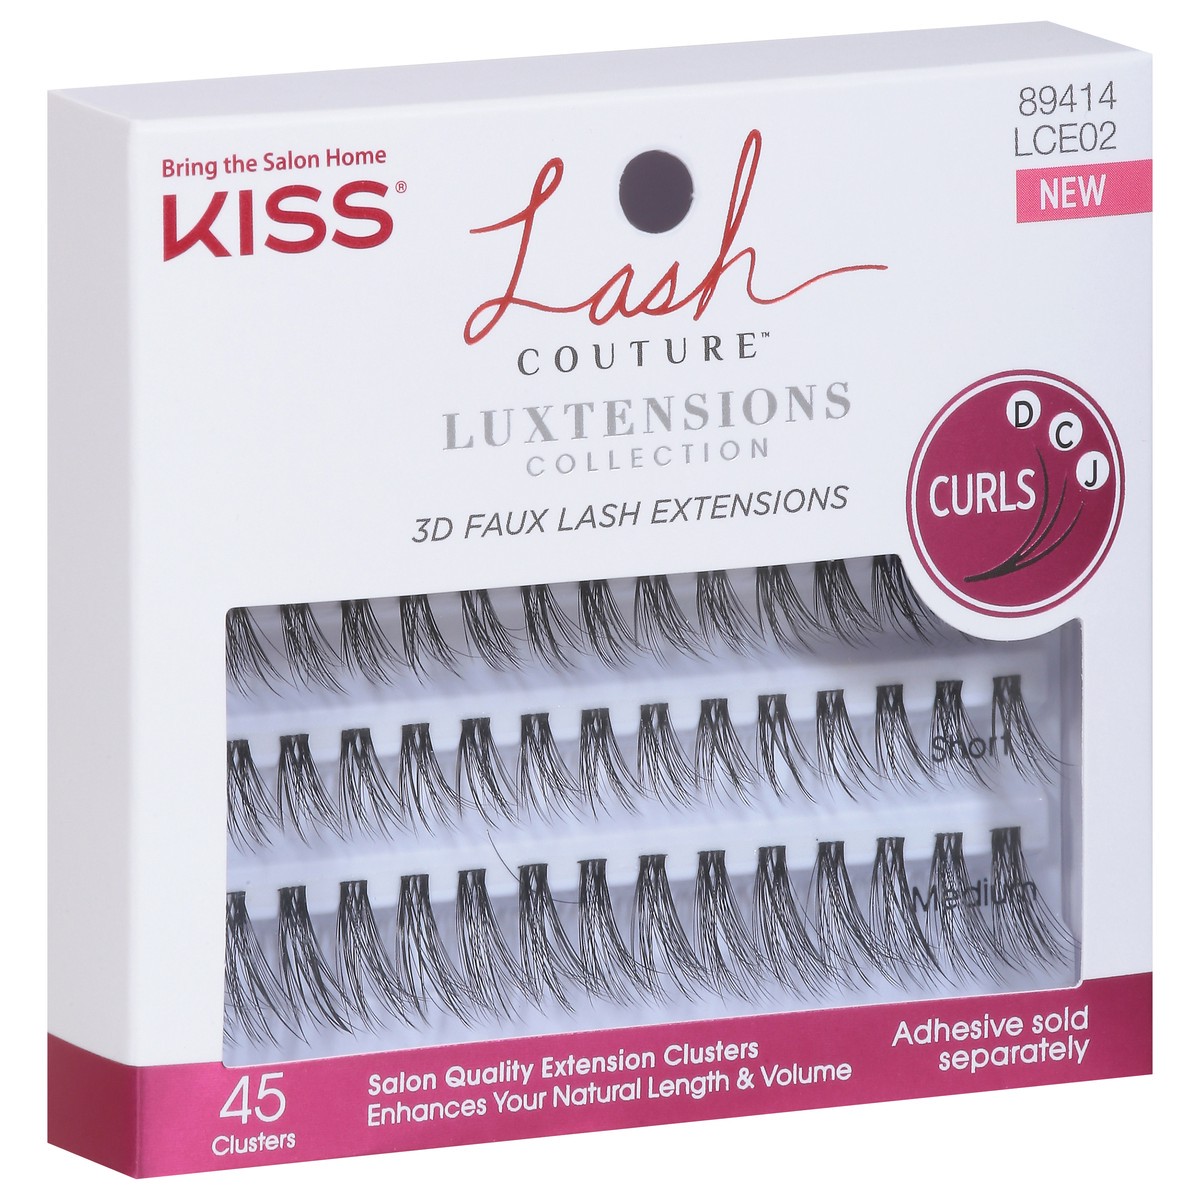 slide 5 of 9, Kiss Lash Couture 3D Faux Luxtensions Collection Lash Extensions 45 ea, 45 ct